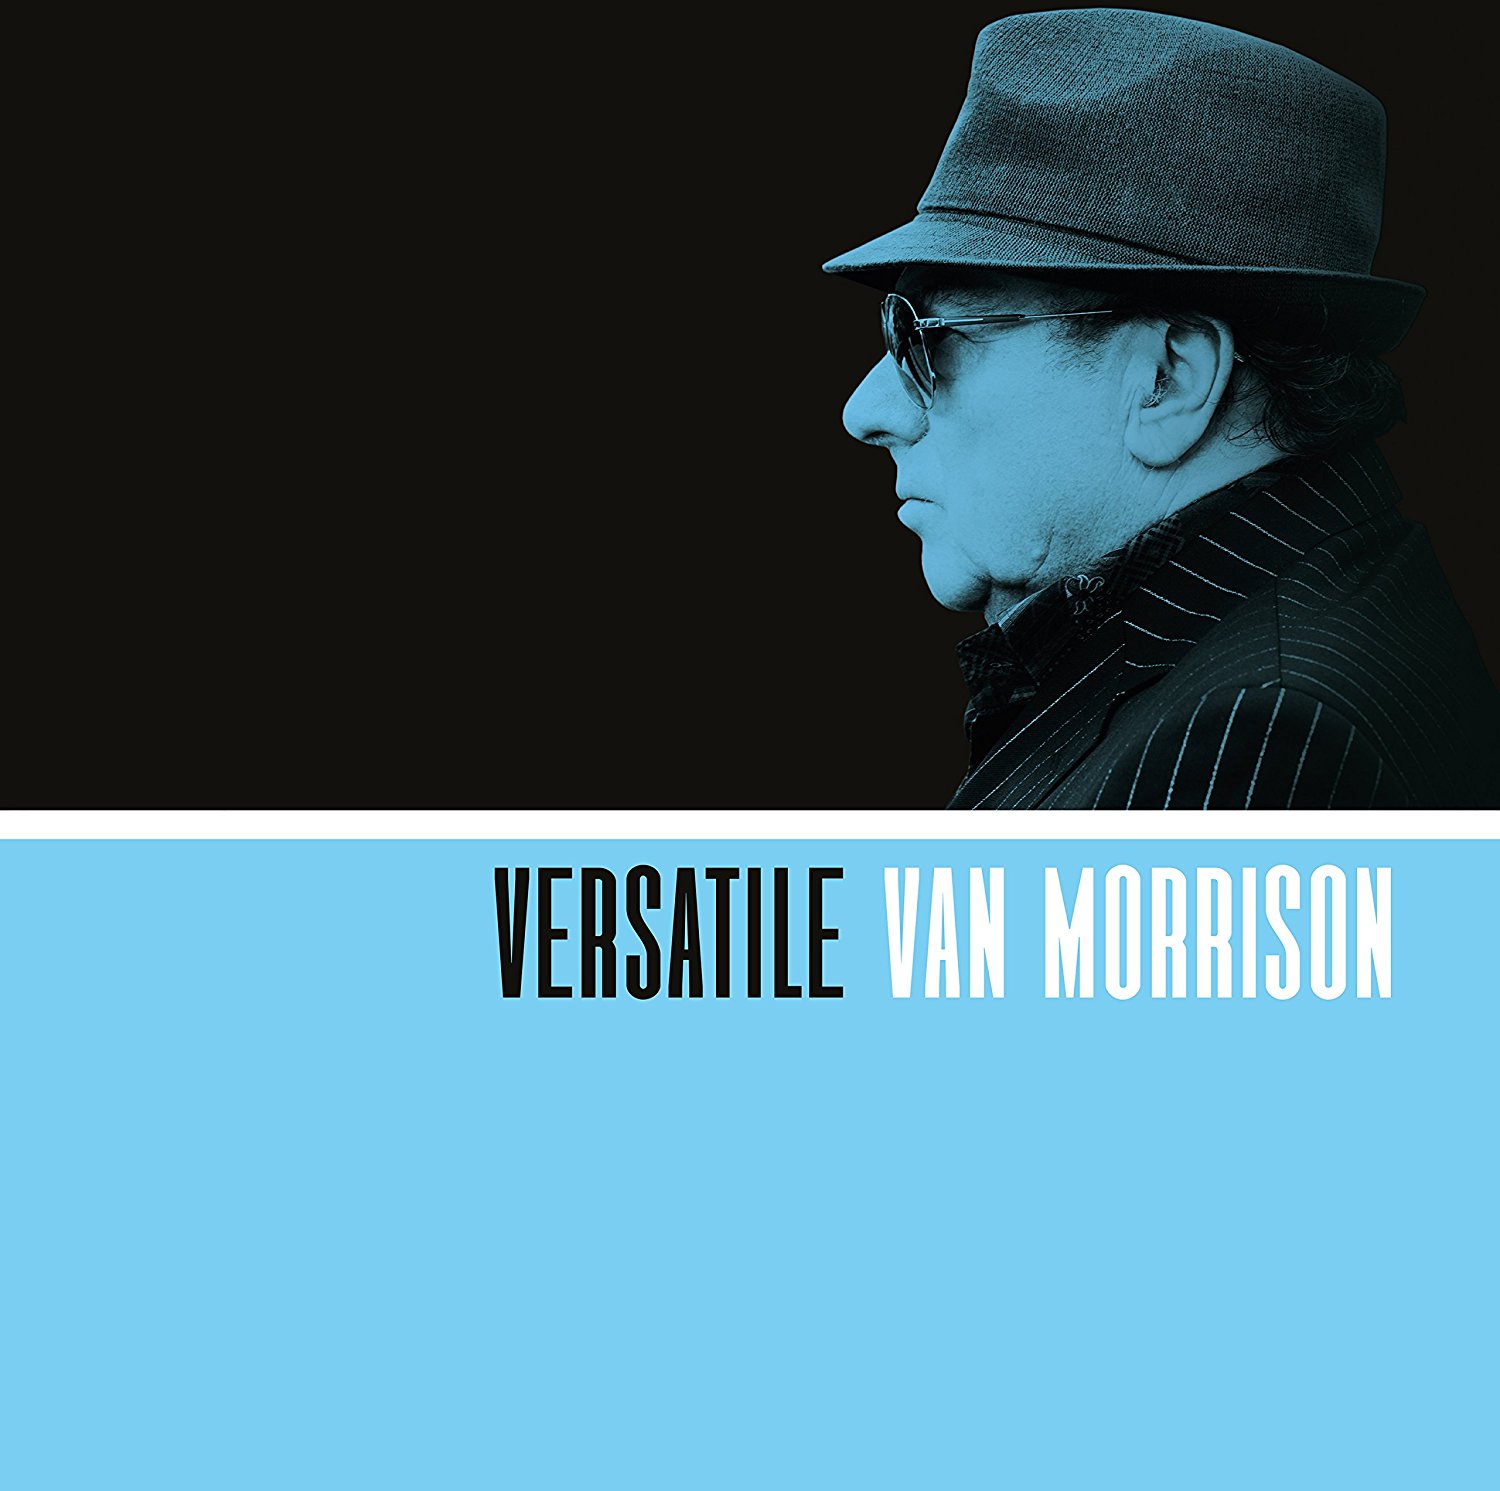 Van Morrison / Versatile SuperDeluxeEdition